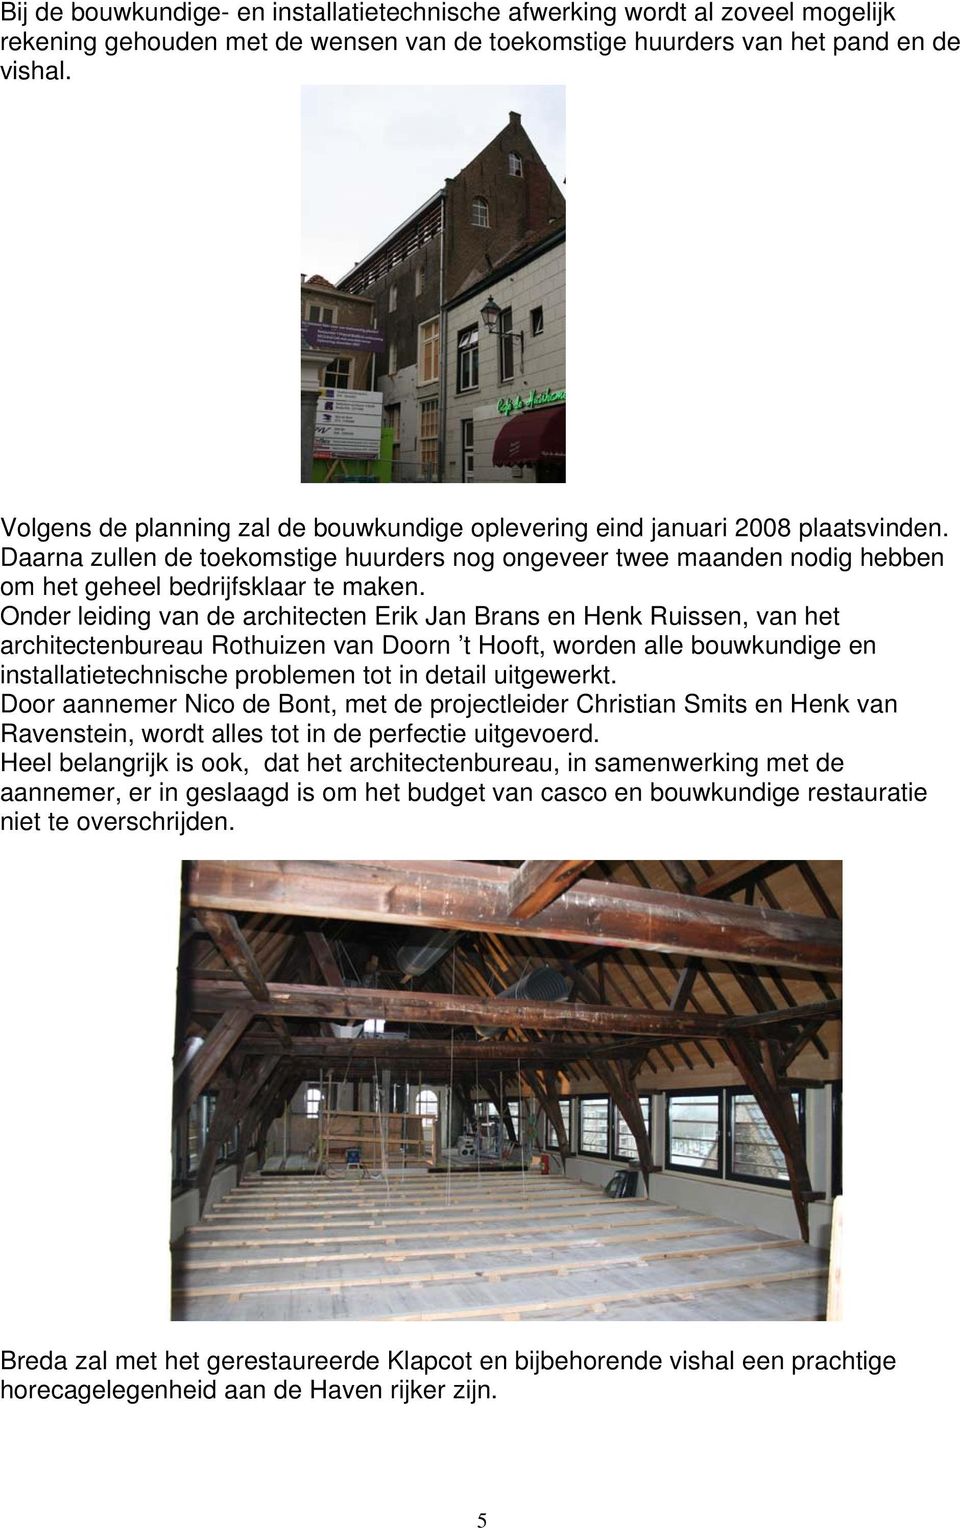 Onder leiding van de architecten Erik Jan Brans en Henk Ruissen, van het architectenbureau Rothuizen van Doorn t Hooft, worden alle bouwkundige en installatietechnische problemen tot in detail